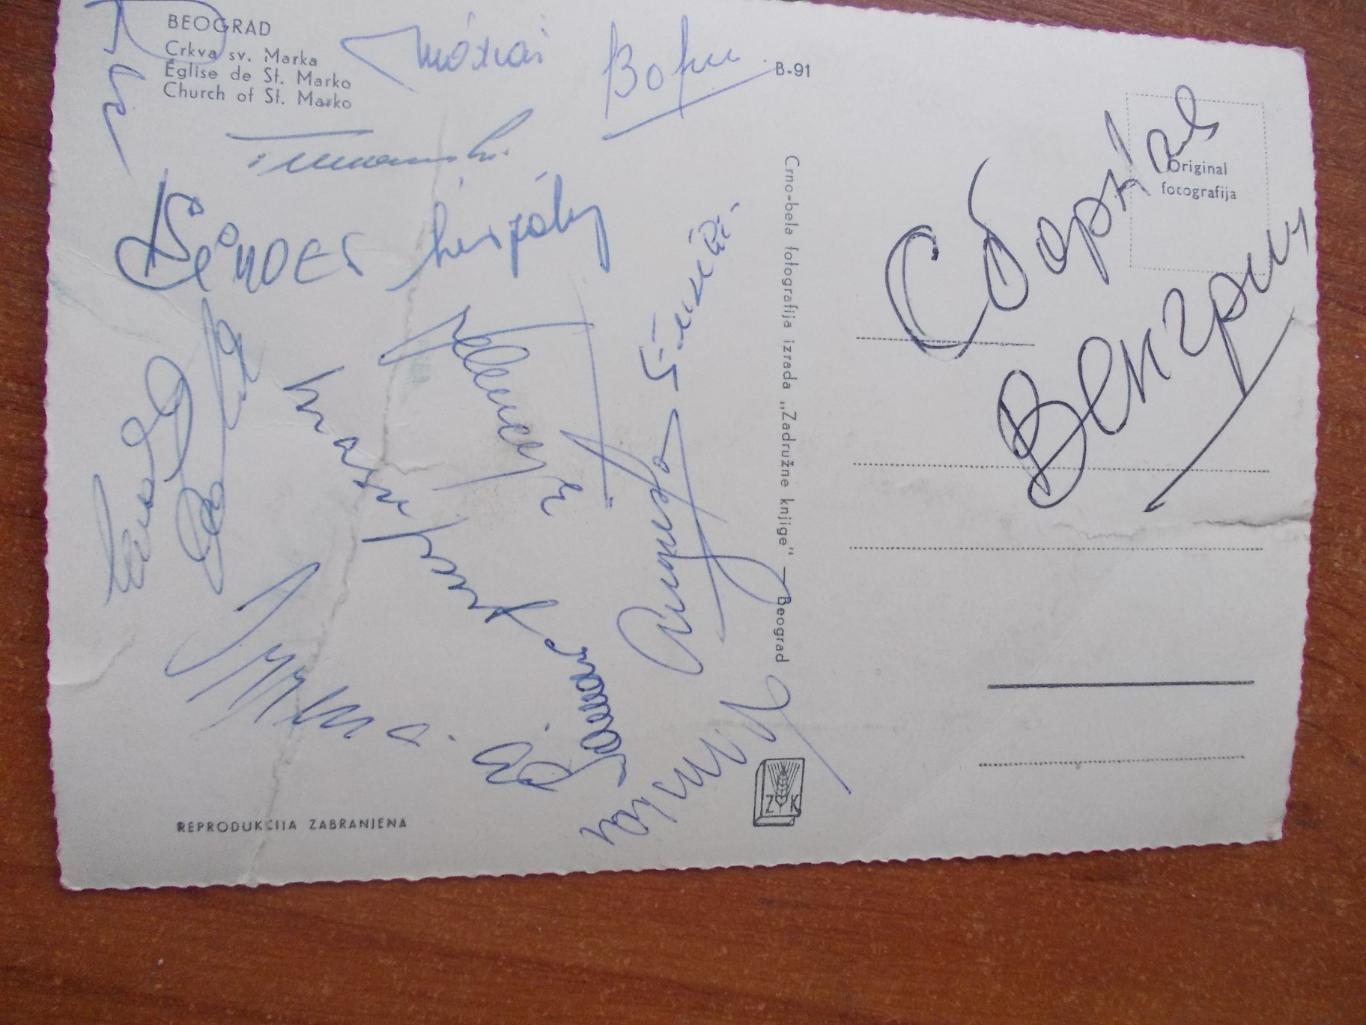 Автографы сборной Чехословакии по футболу 60-х годов на открытке 1